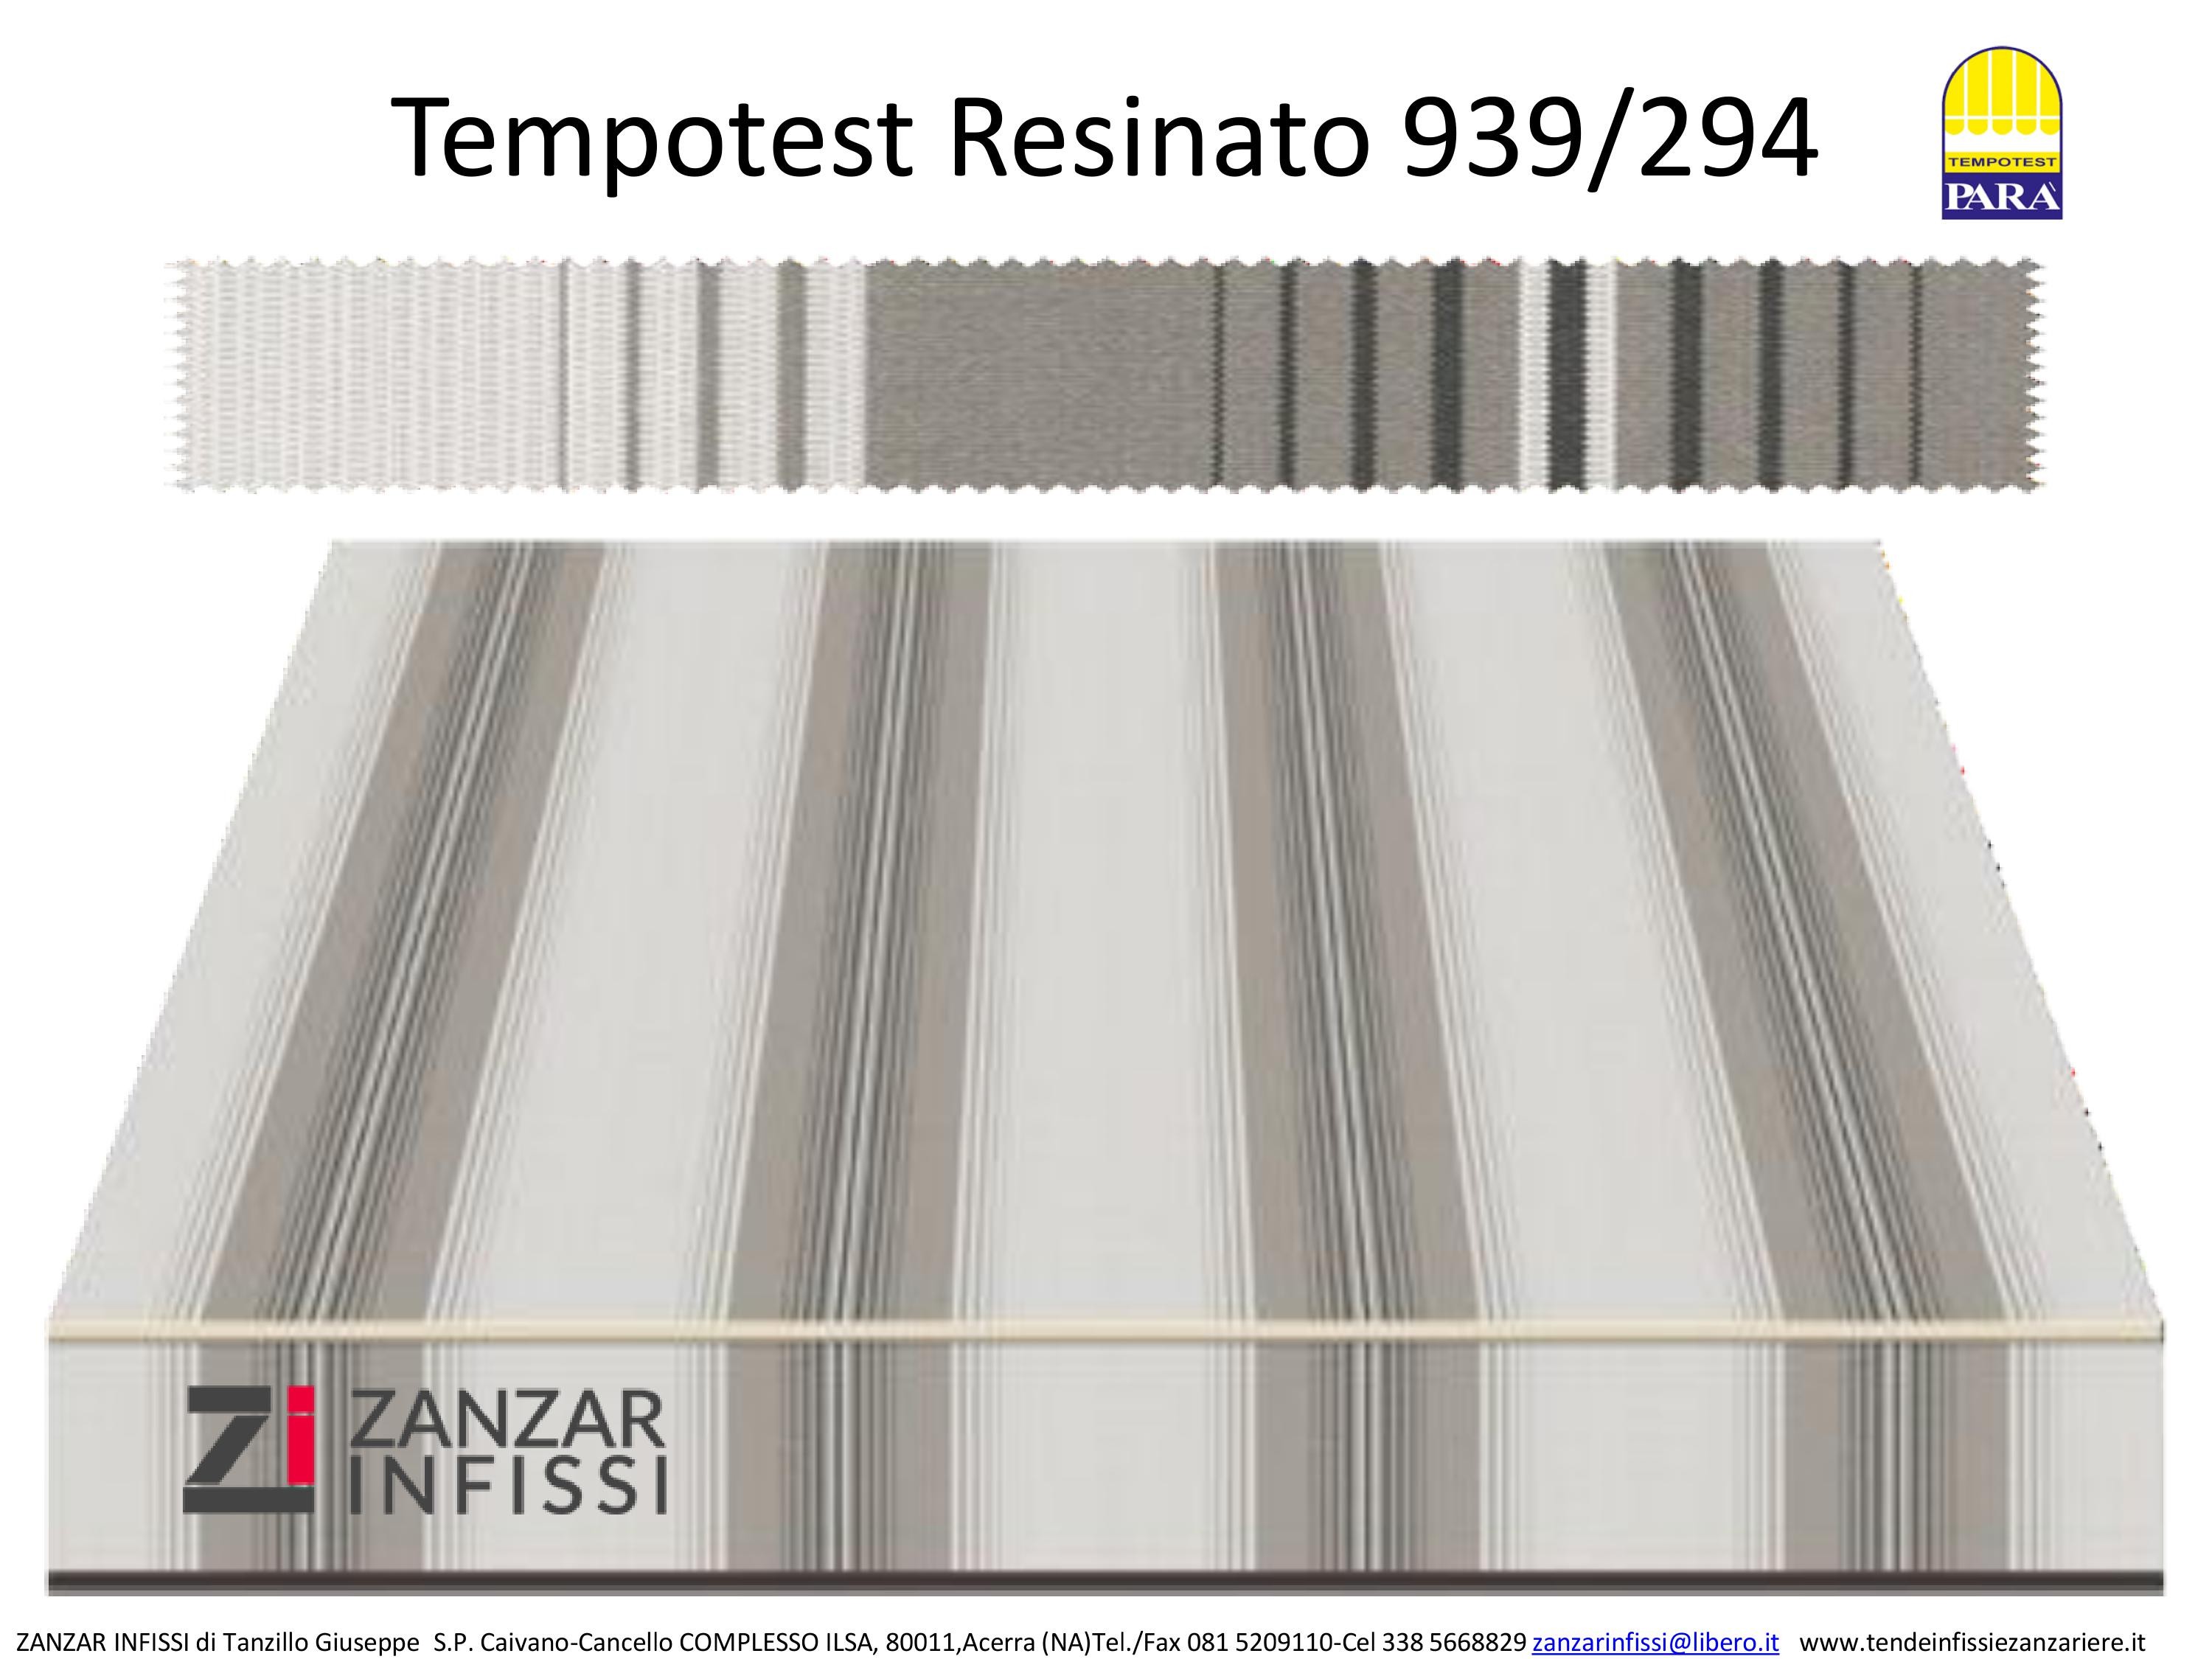 Tempotest resinato 939/294